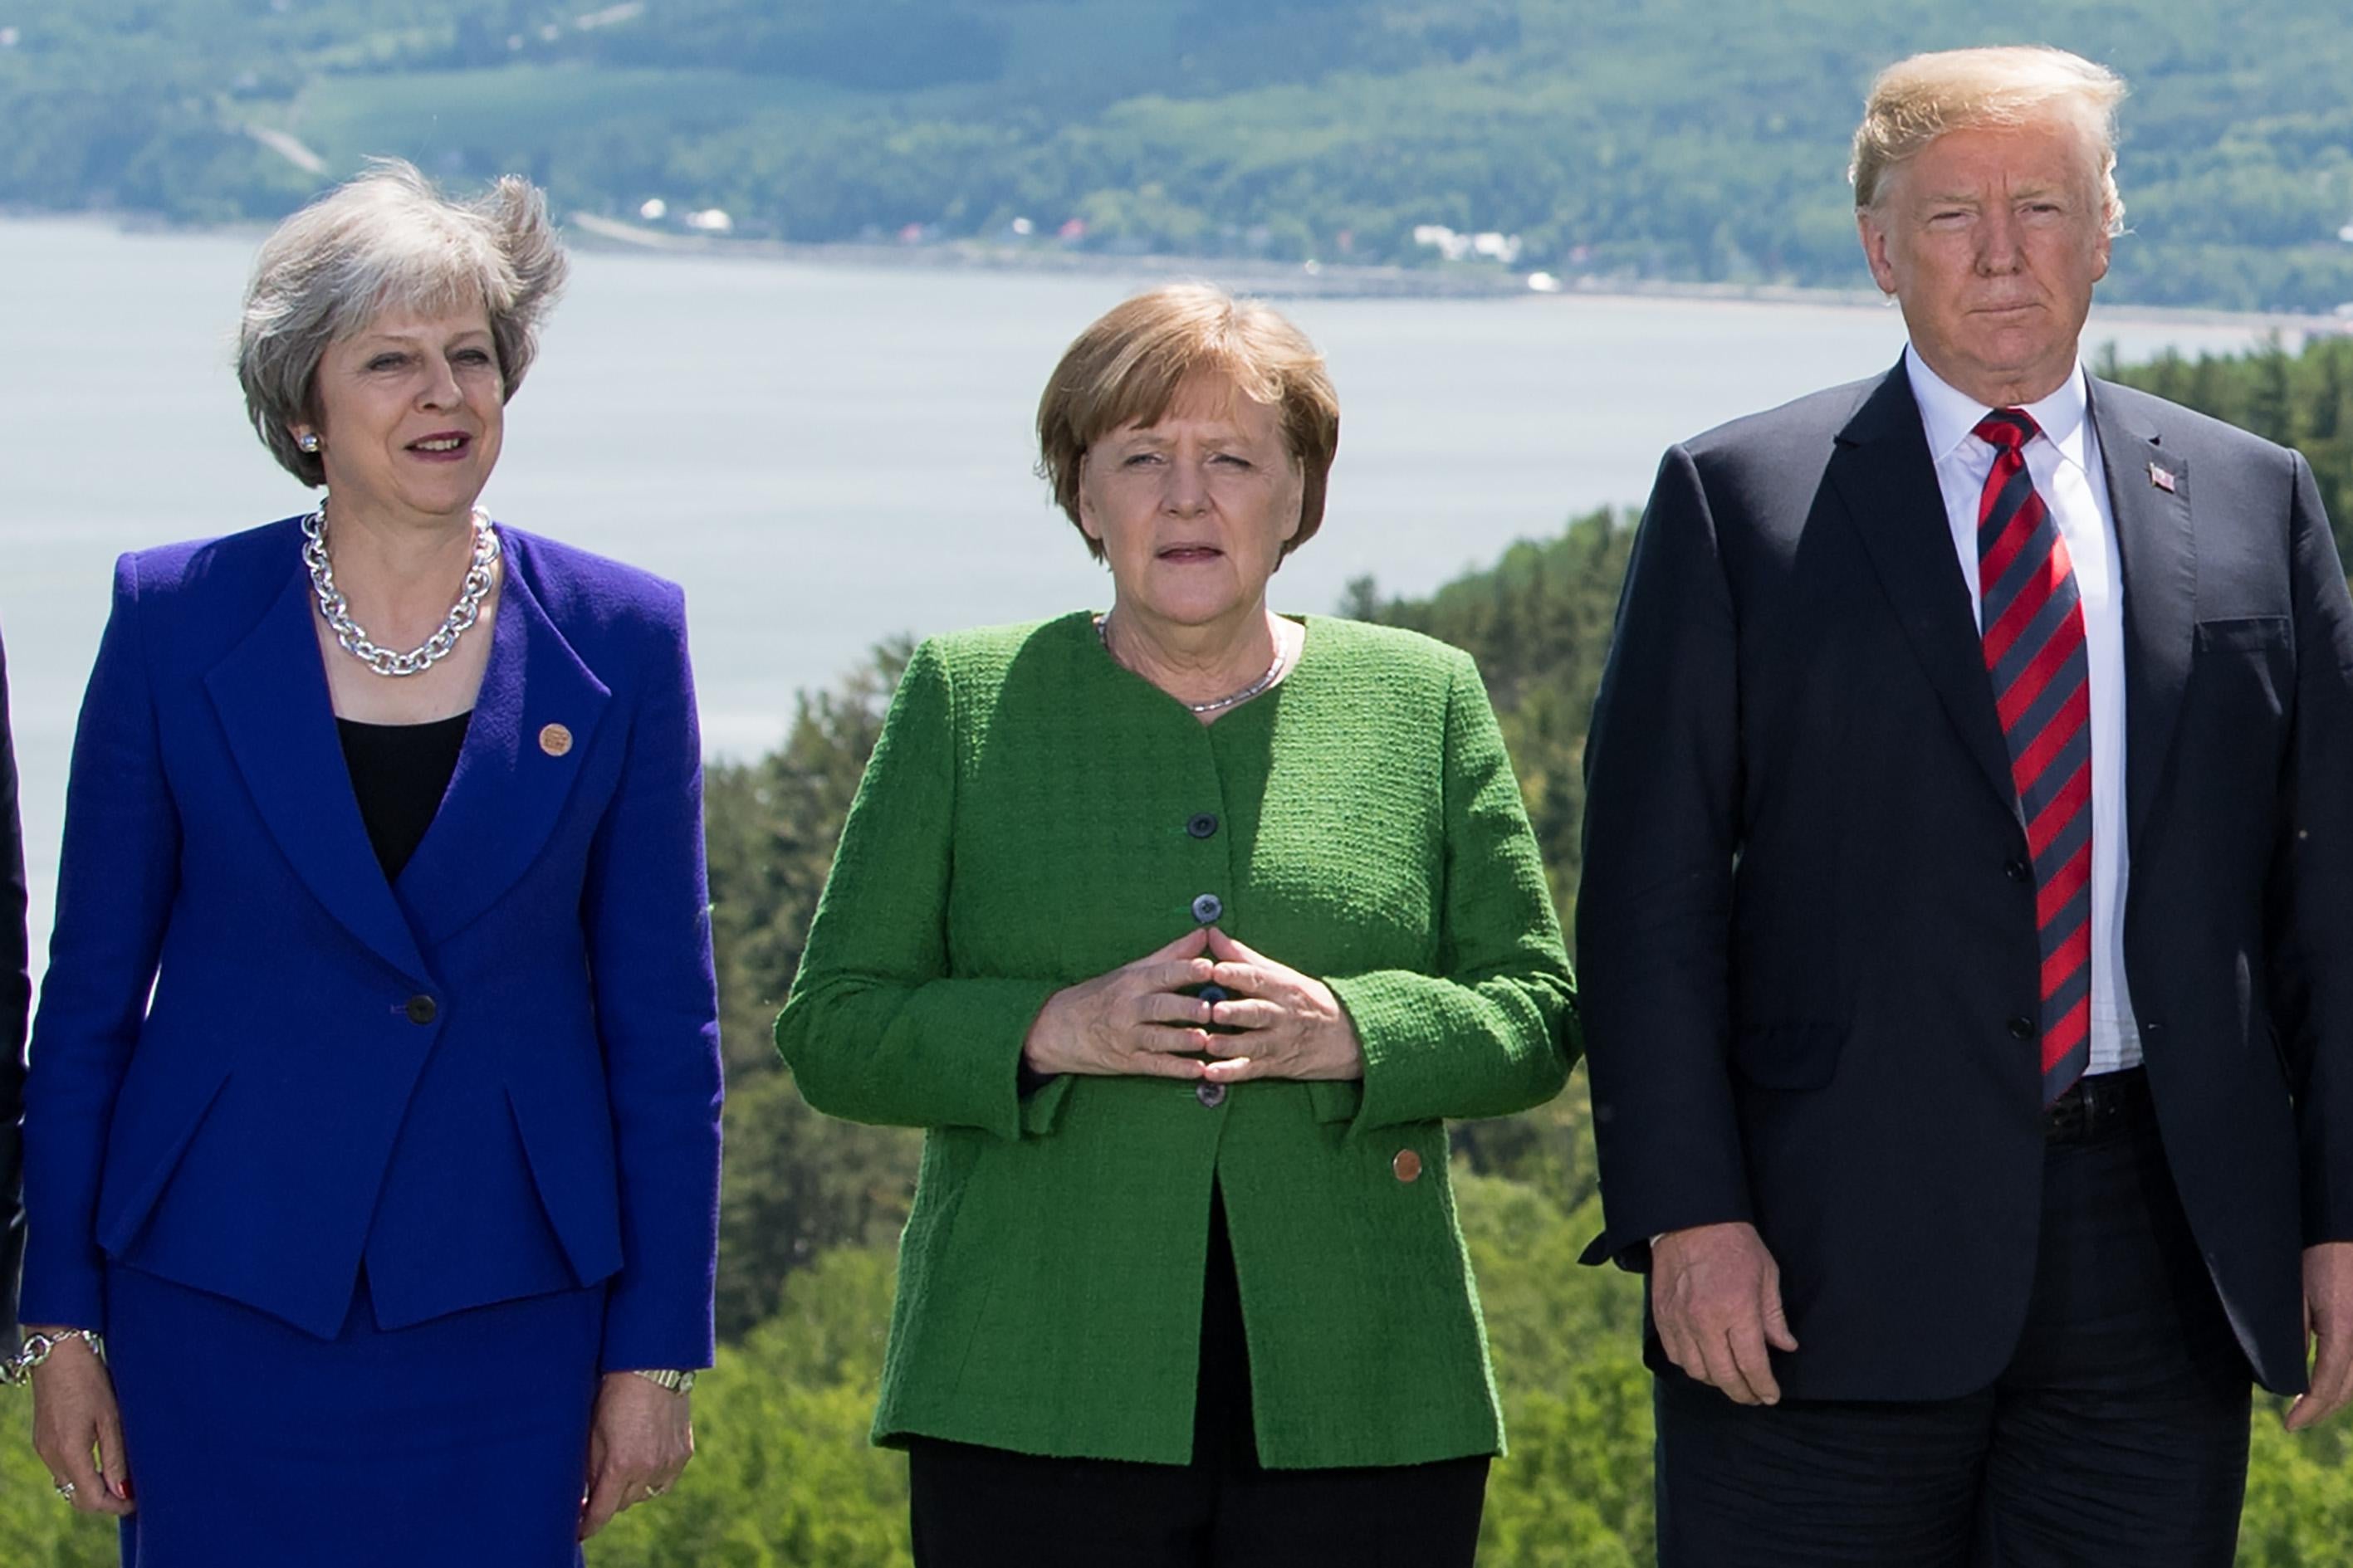 Theresa May, Angela Merkel, and Donald Trump.